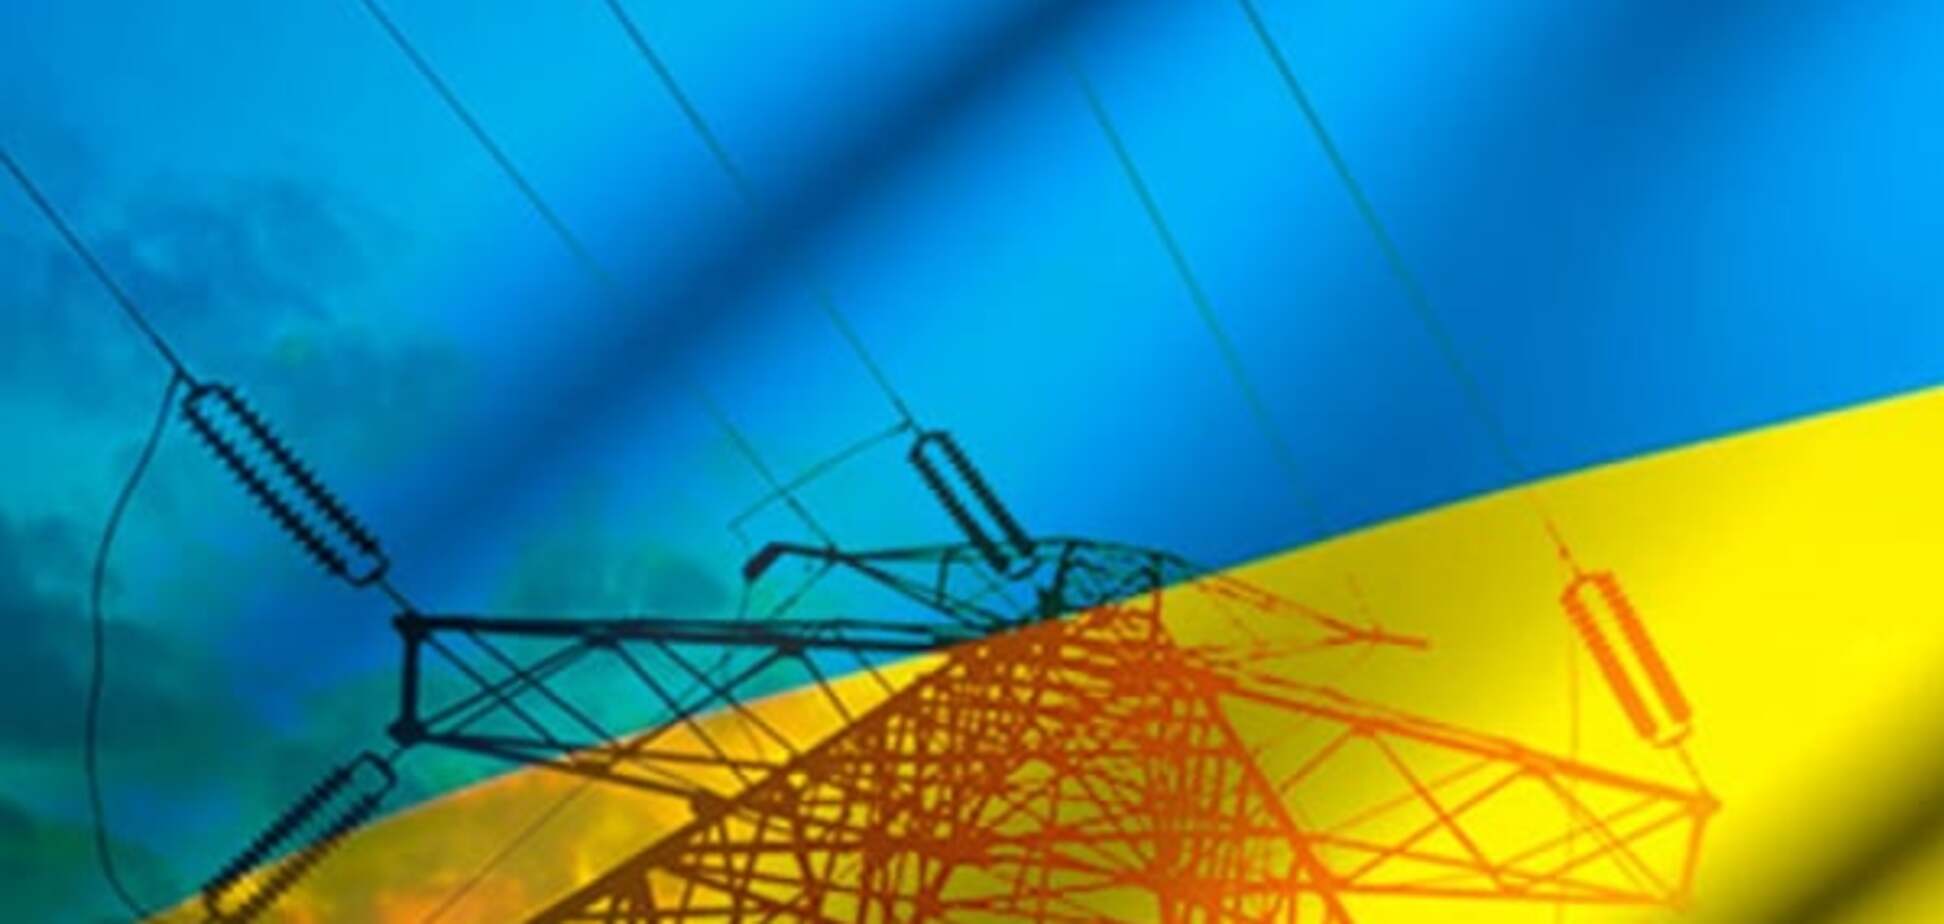 Експерти розповіли, що насправді відбувається на енергоринку України